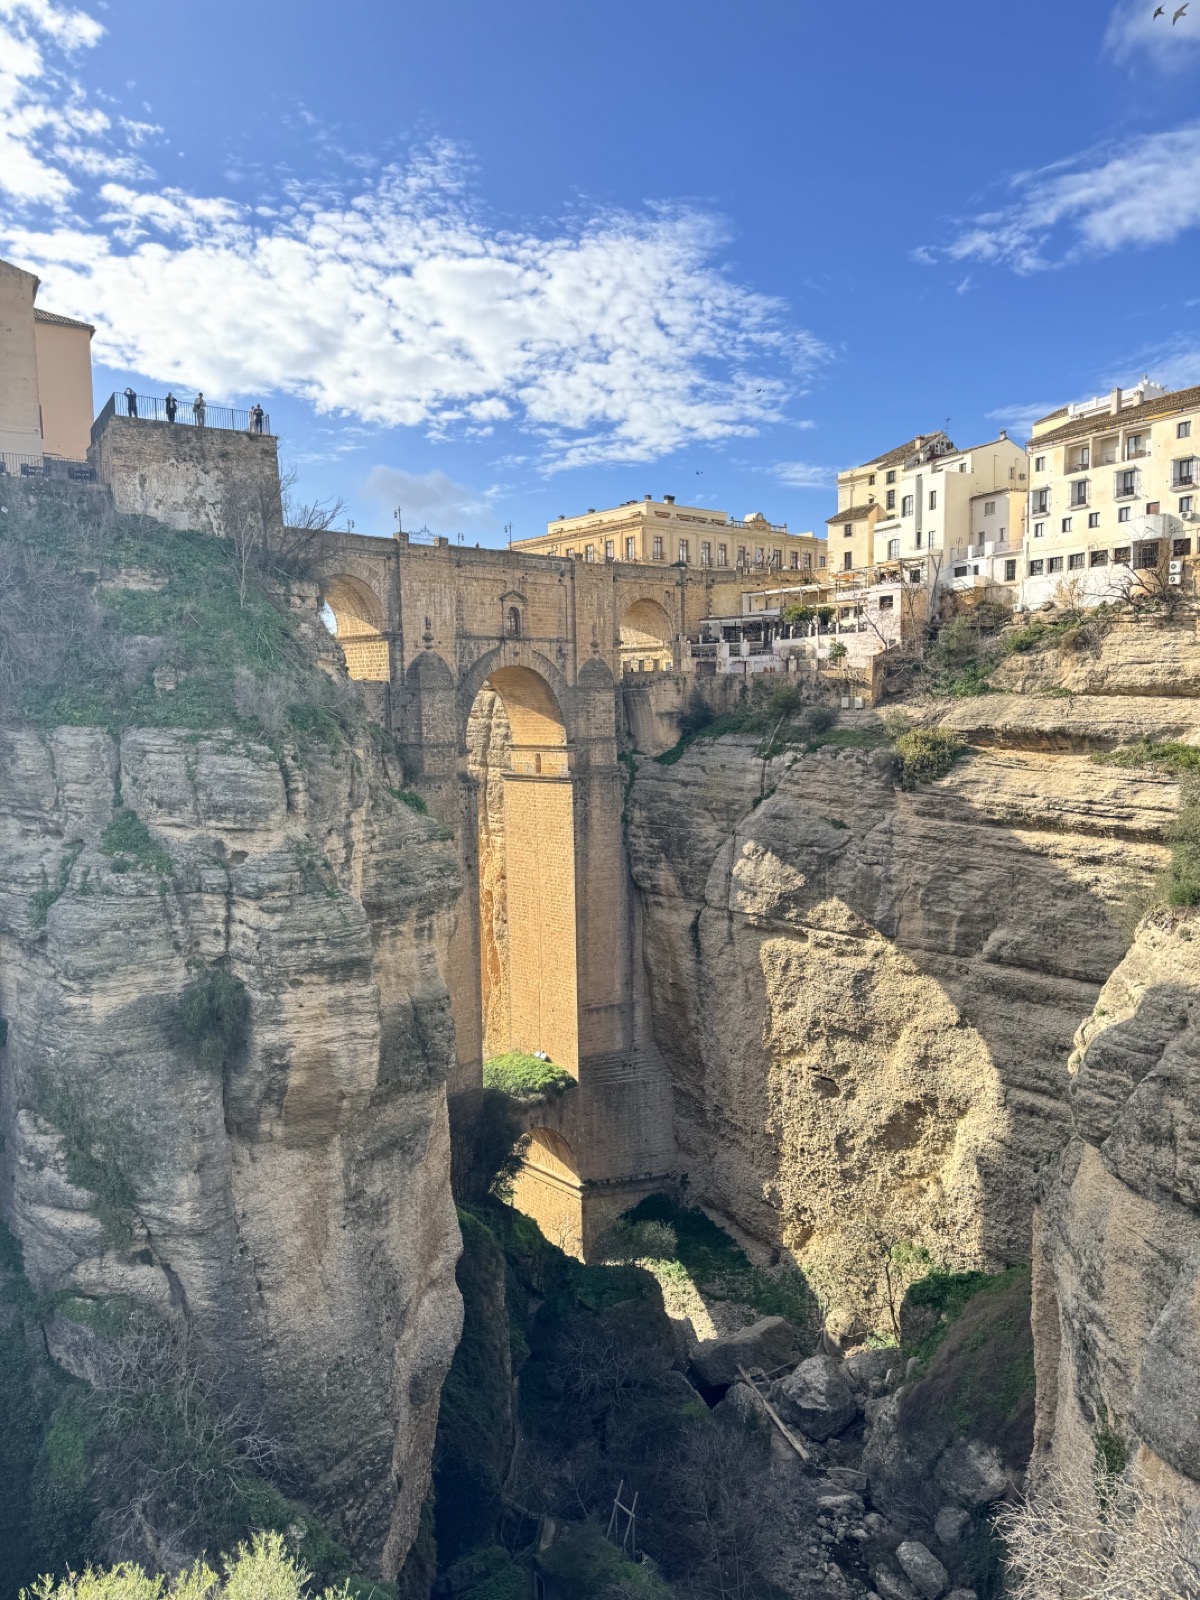 The gorge bridge in Ronda